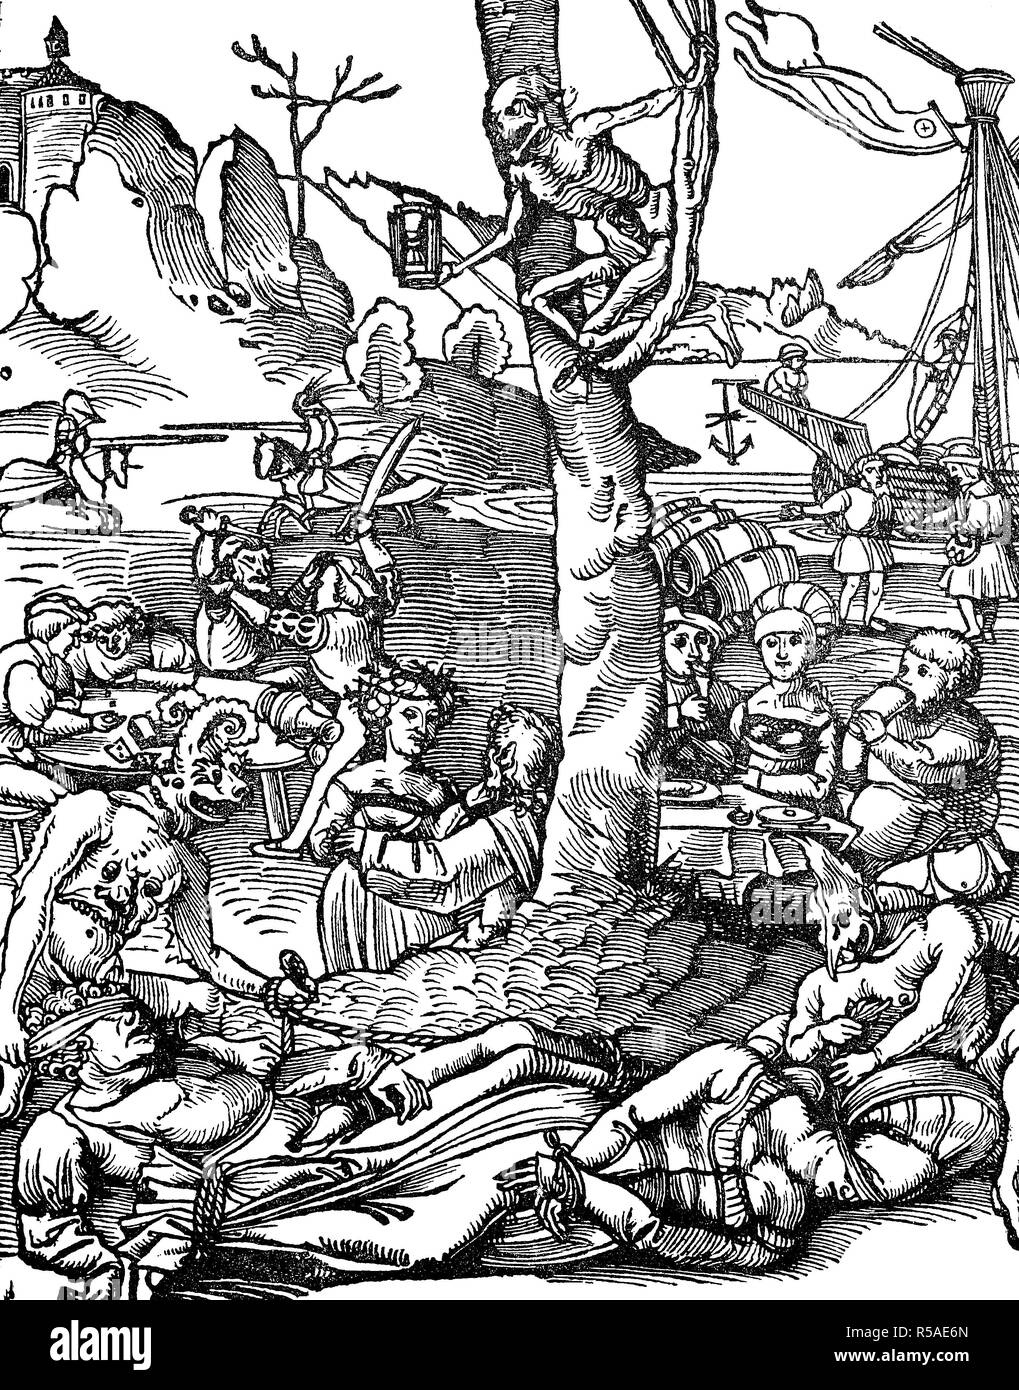 Allégorie sur les conséquences de l'excès du vin, femme et jouer, 1510, gravure sur bois, France Banque D'Images